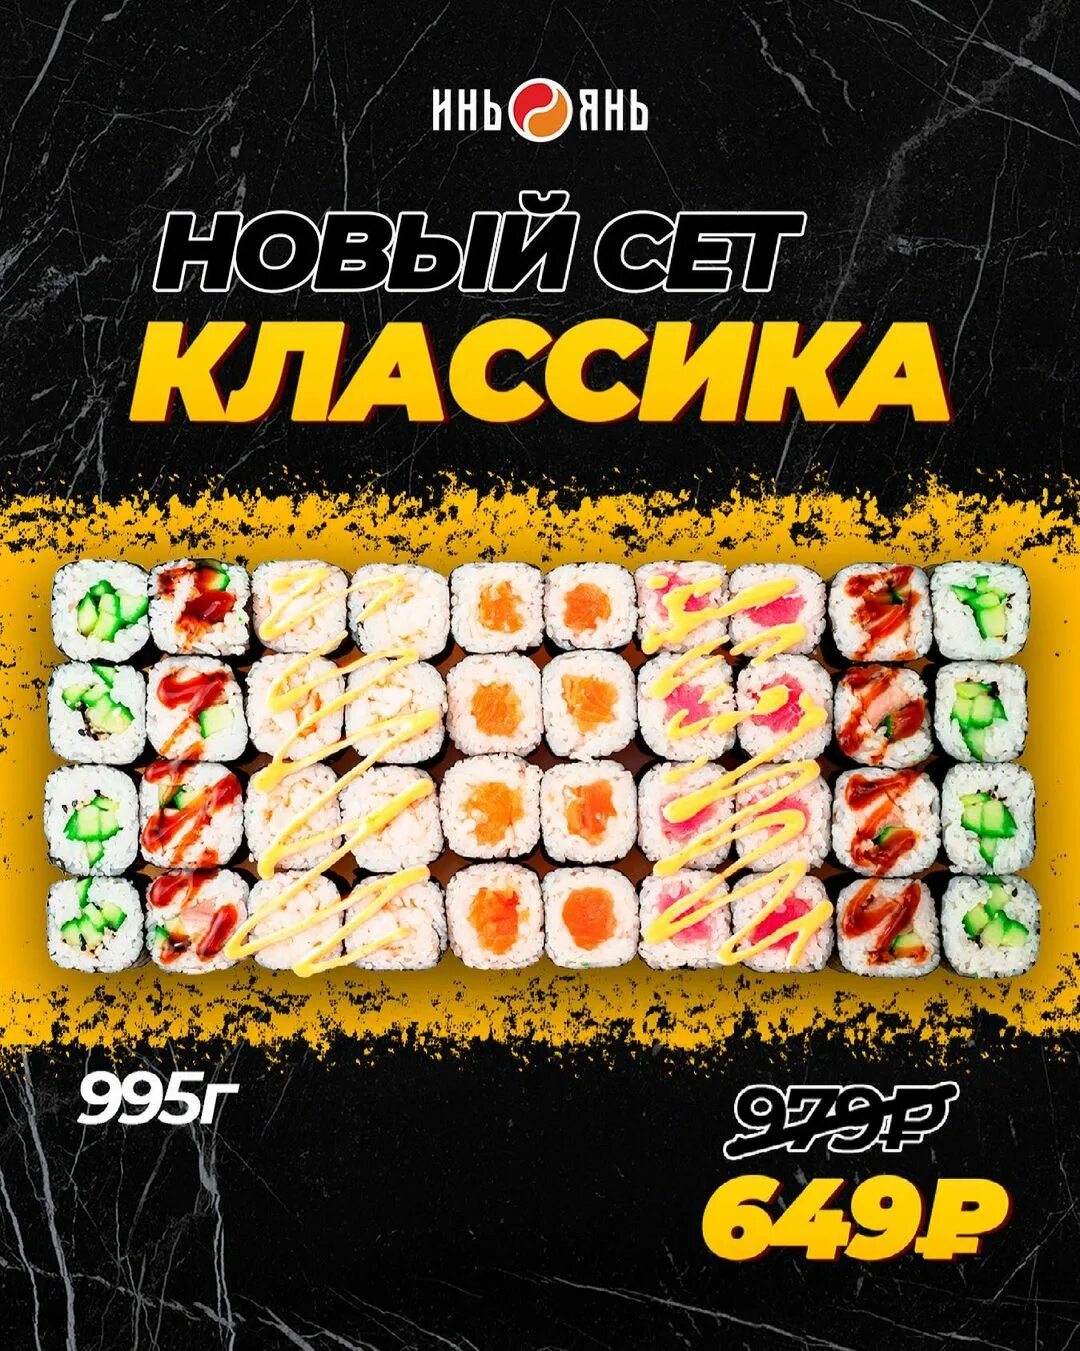 Заказать суши в рузаевки фото 95